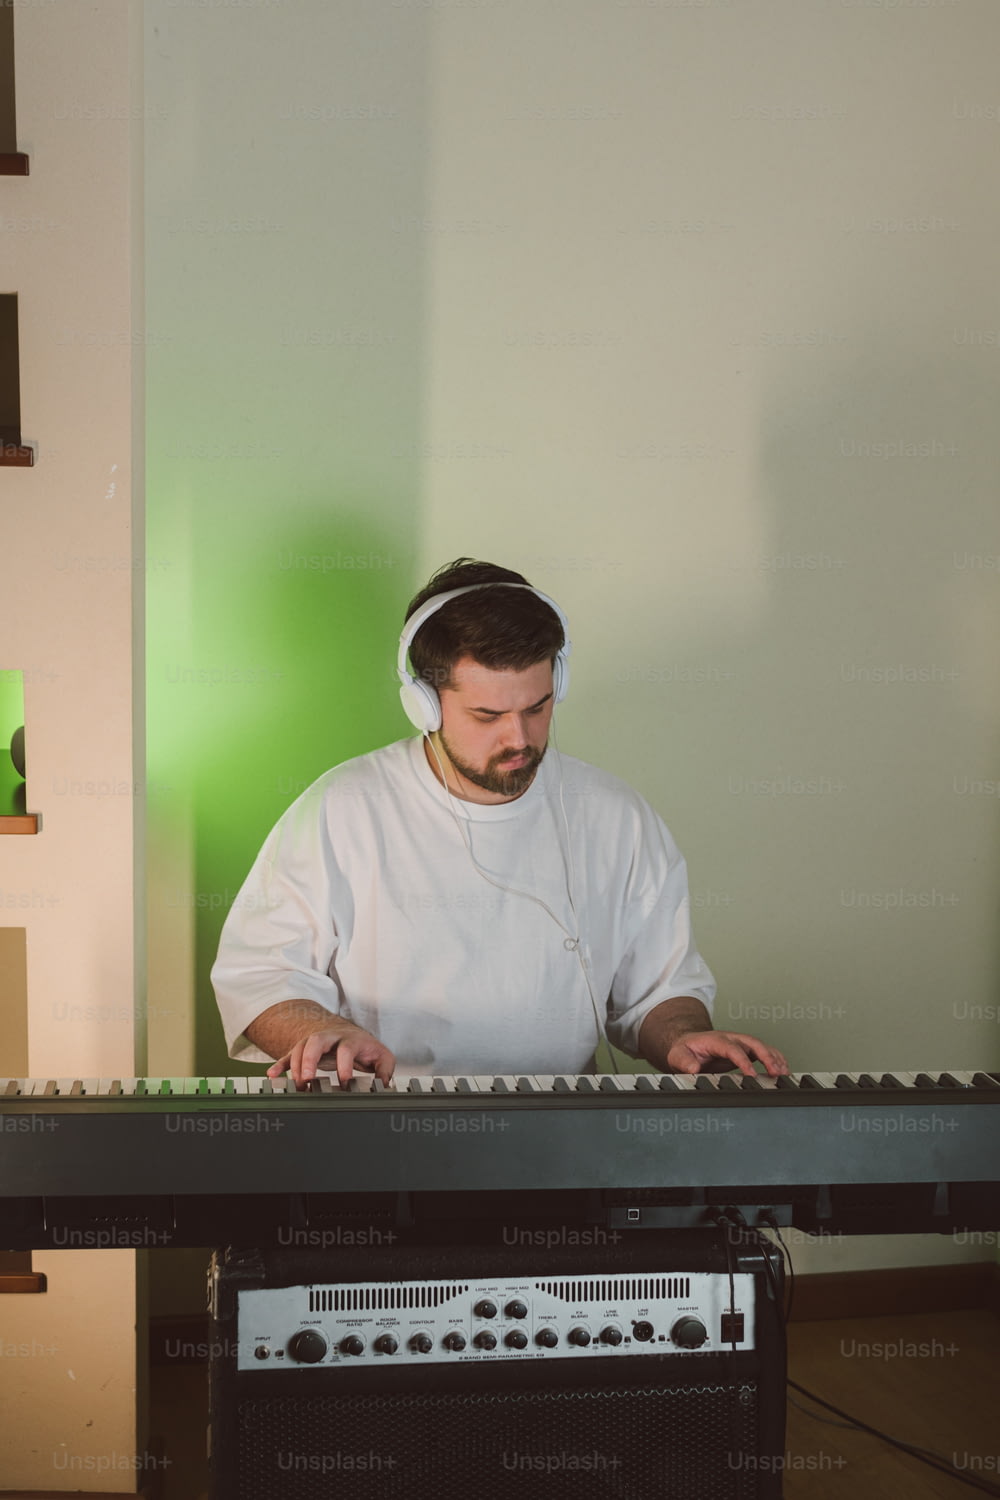 Un uomo con una camicia bianca sta suonando una tastiera